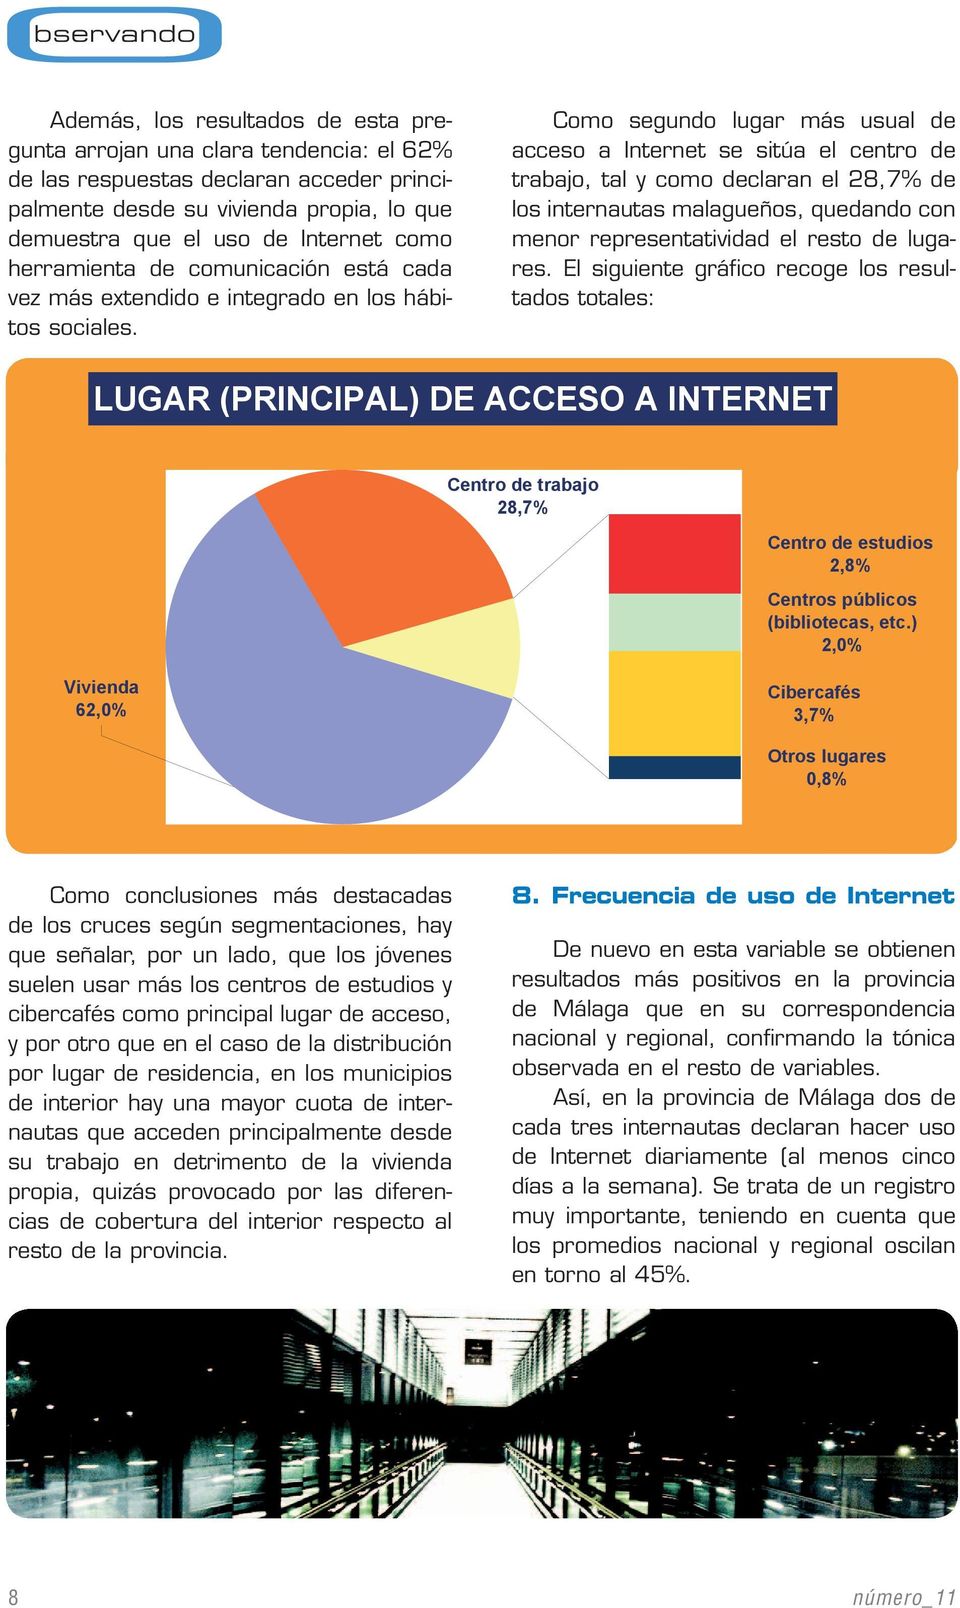 Como segundo lugar más usual de acceso a Internet se sitúa el centro de trabajo, tal y como declaran el 28,7% de los internautas malagueños, quedando con menor representatividad el resto de lugares.